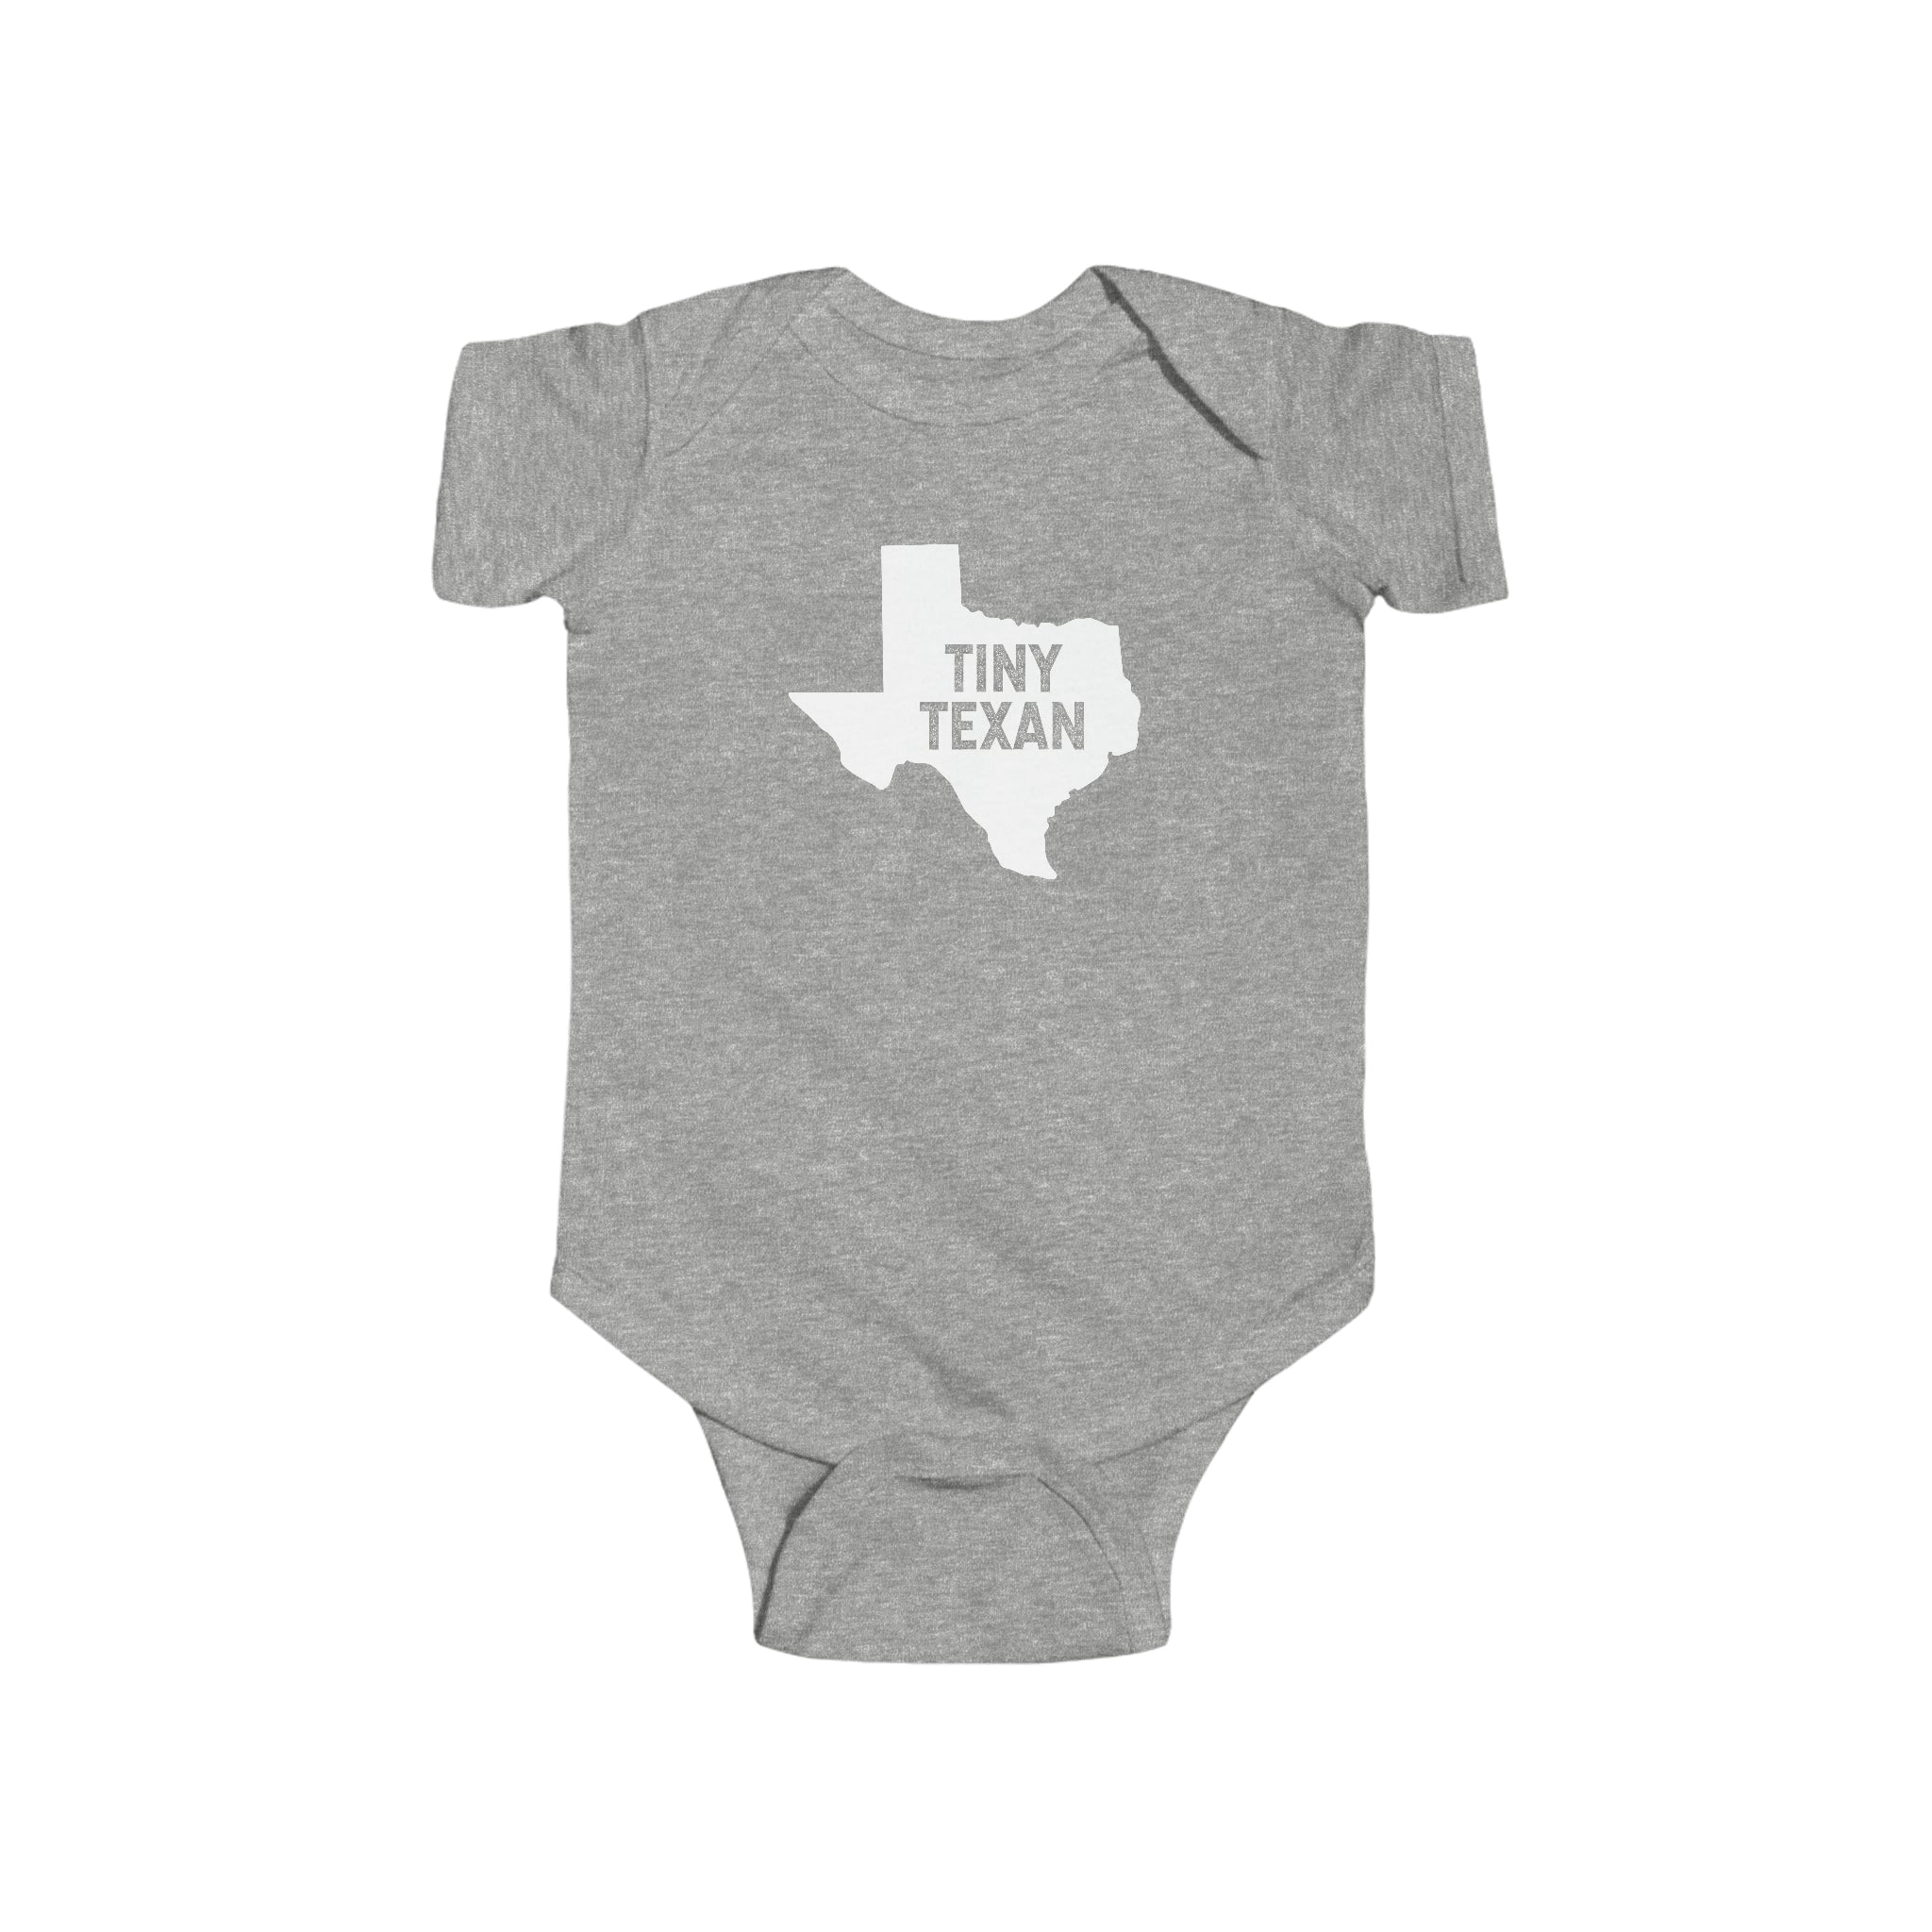 Tiny Texan Onesie